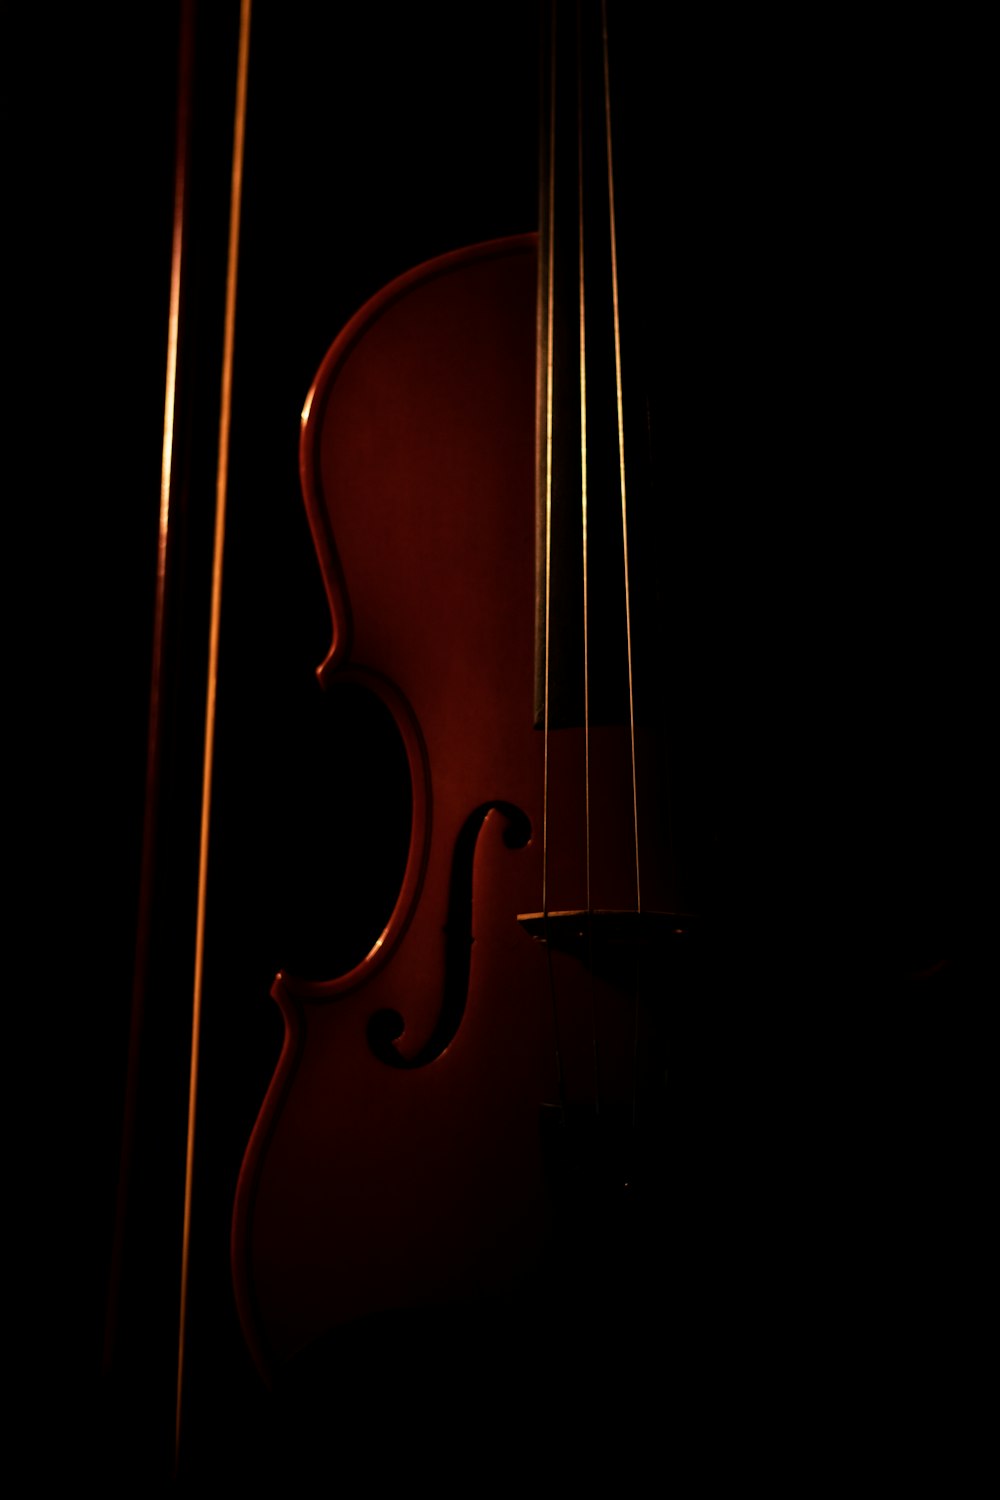 violino marrom com fundo preto